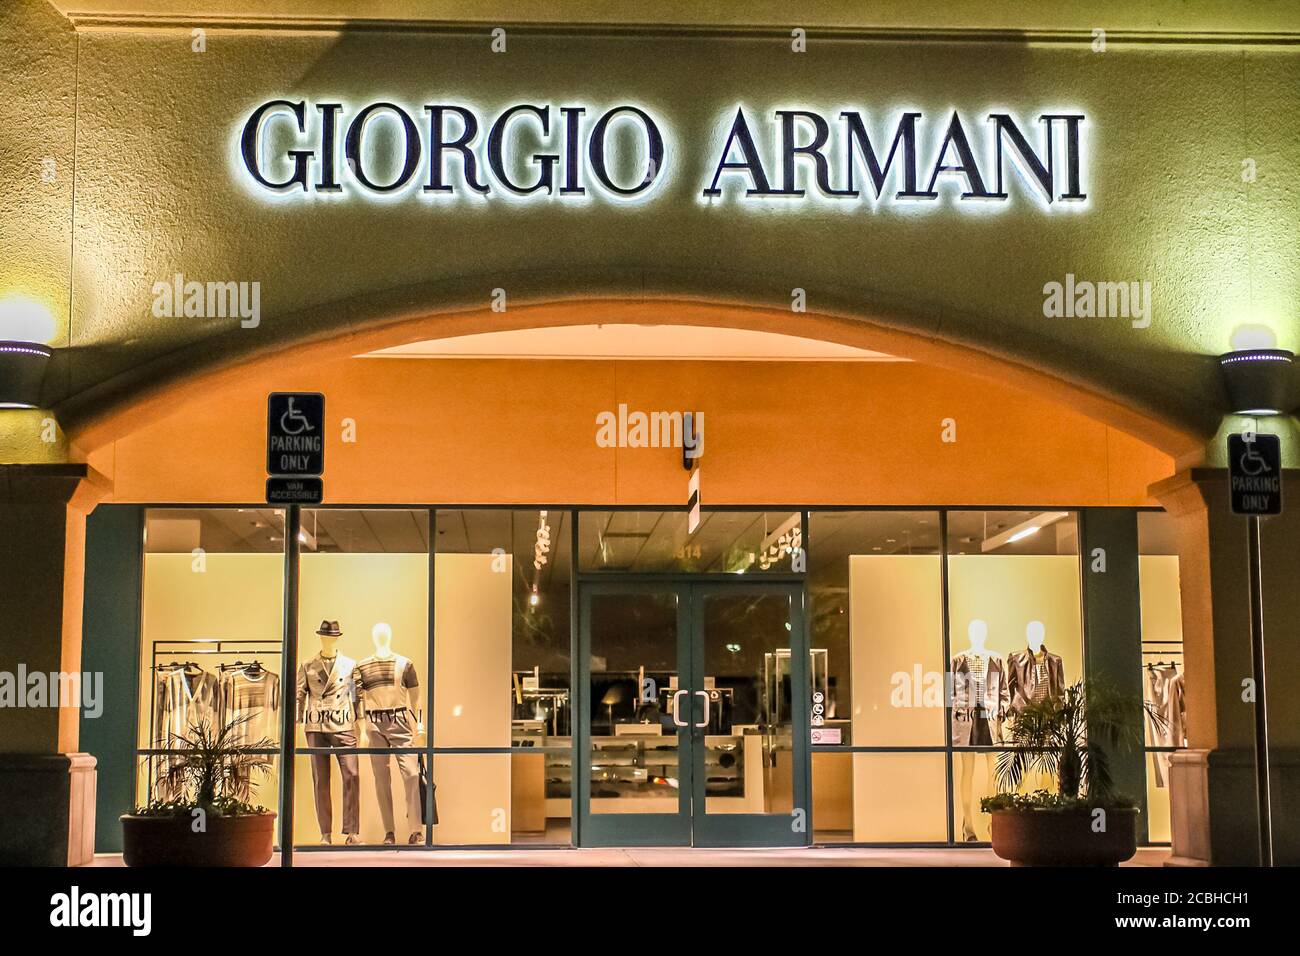 giorgio armani outlet store